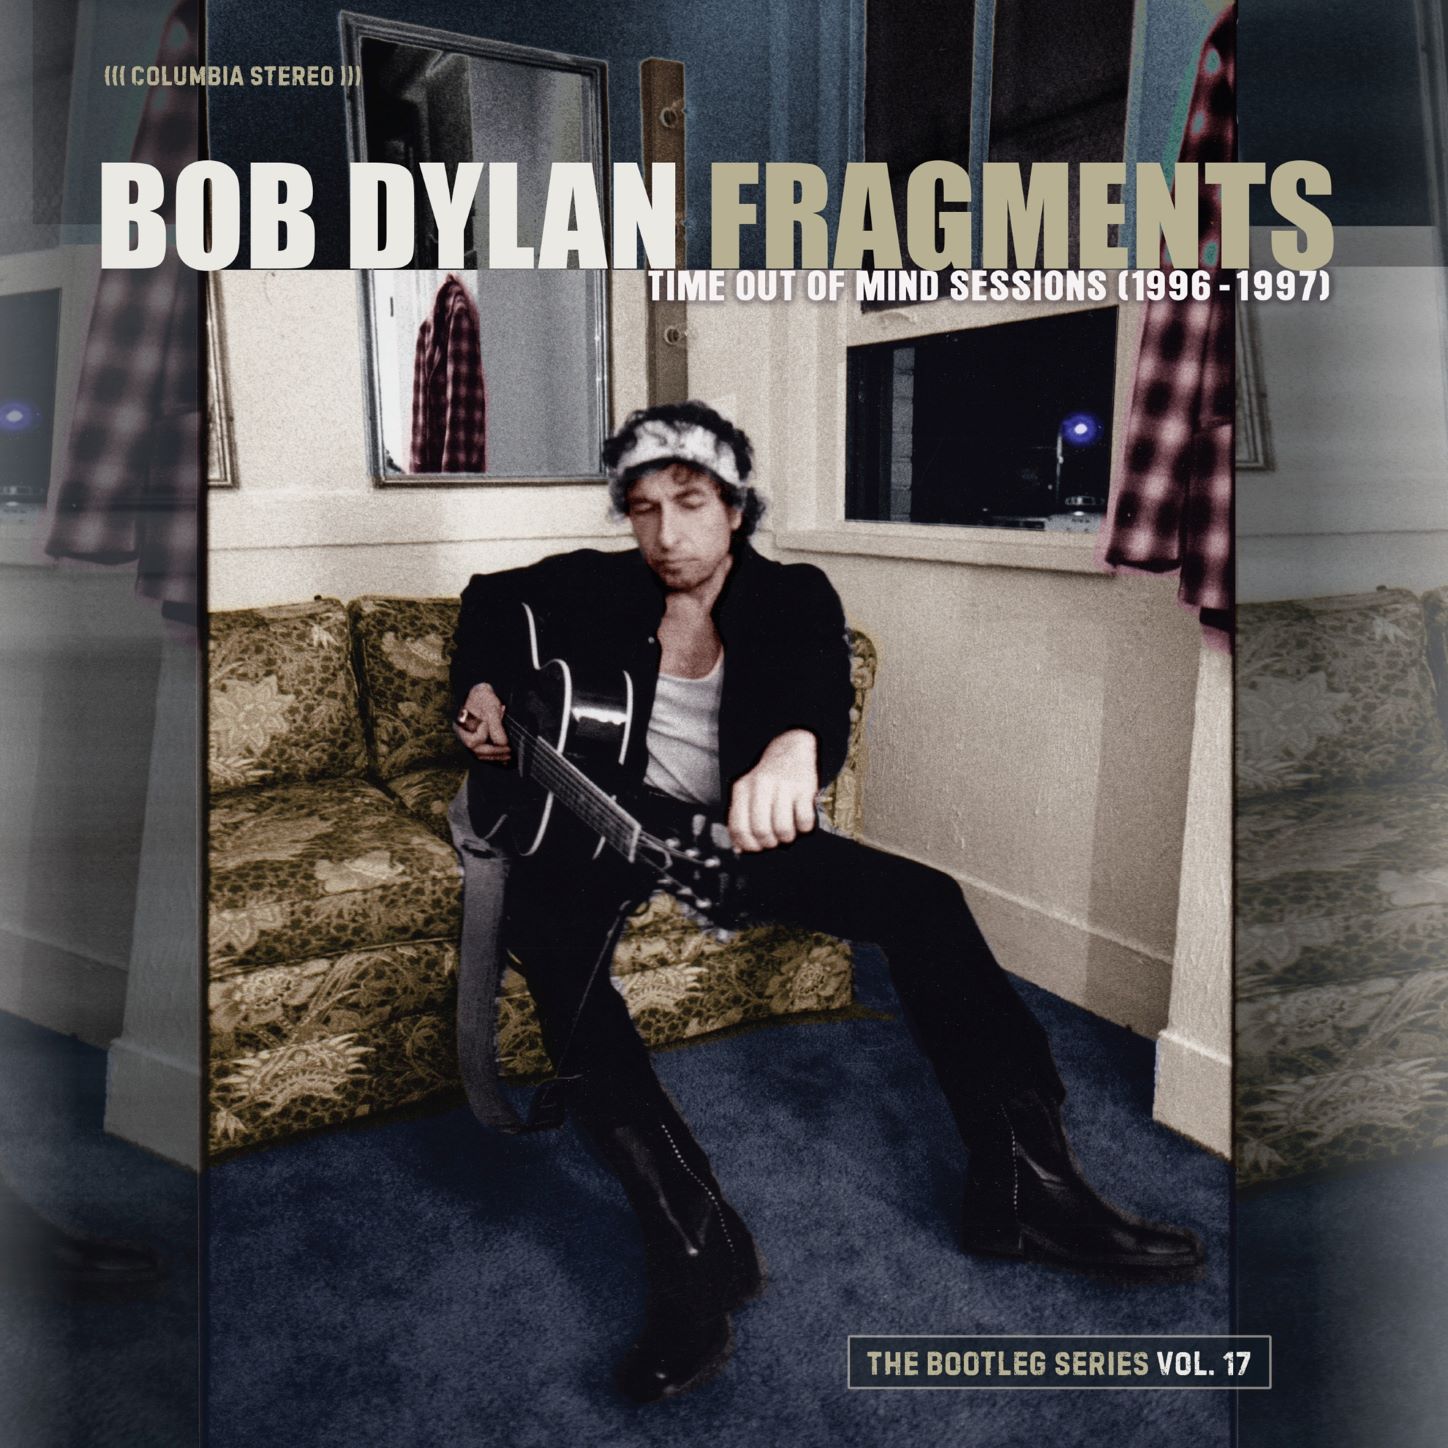 ボブ・ディラン / FRAGMENTS - TIME OUT OF MIND SESSIONS (1996-1997): THE BOOTLEG SERIES VOL. 17 (2CD)